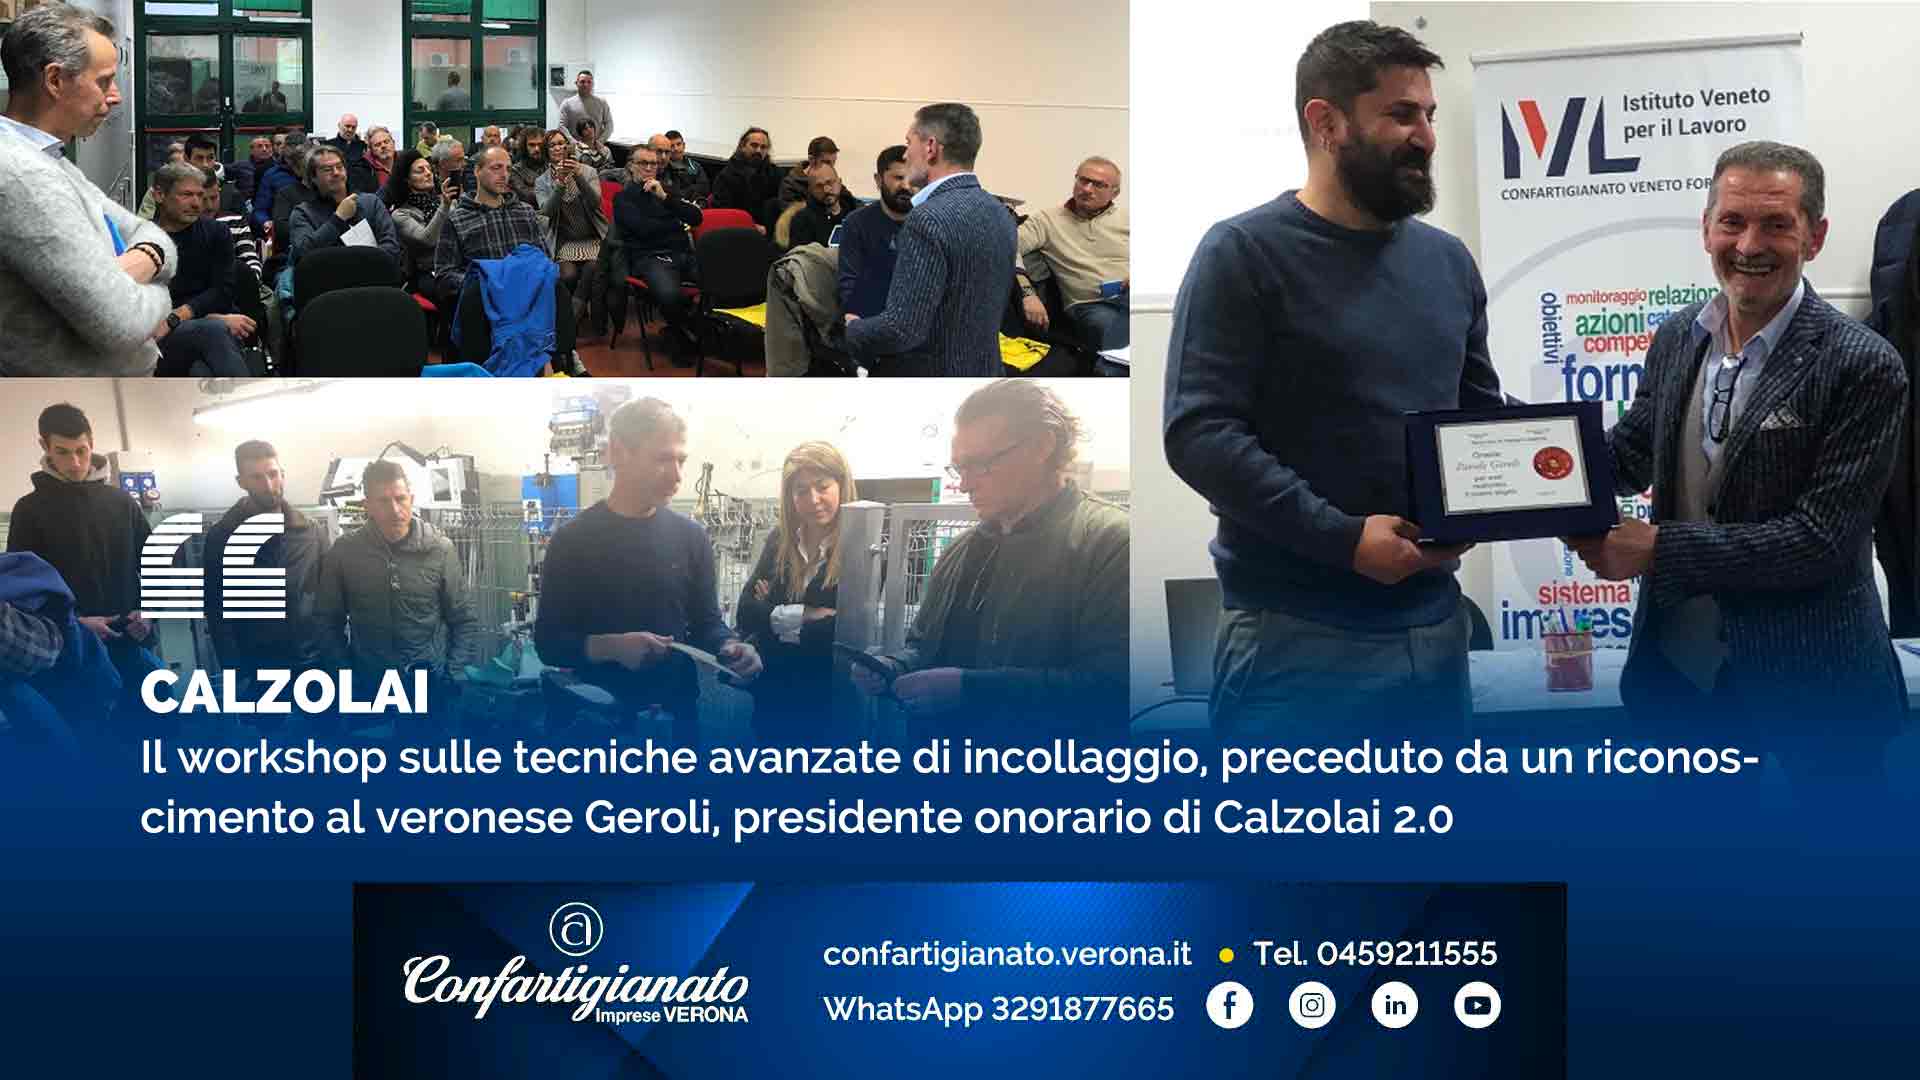 CALZOLAI – Il workshop sulle tecniche avanzate di incollaggio, preceduto da un riconoscimento al veronese Geroli, presidente onorario di Calzolai 2.0